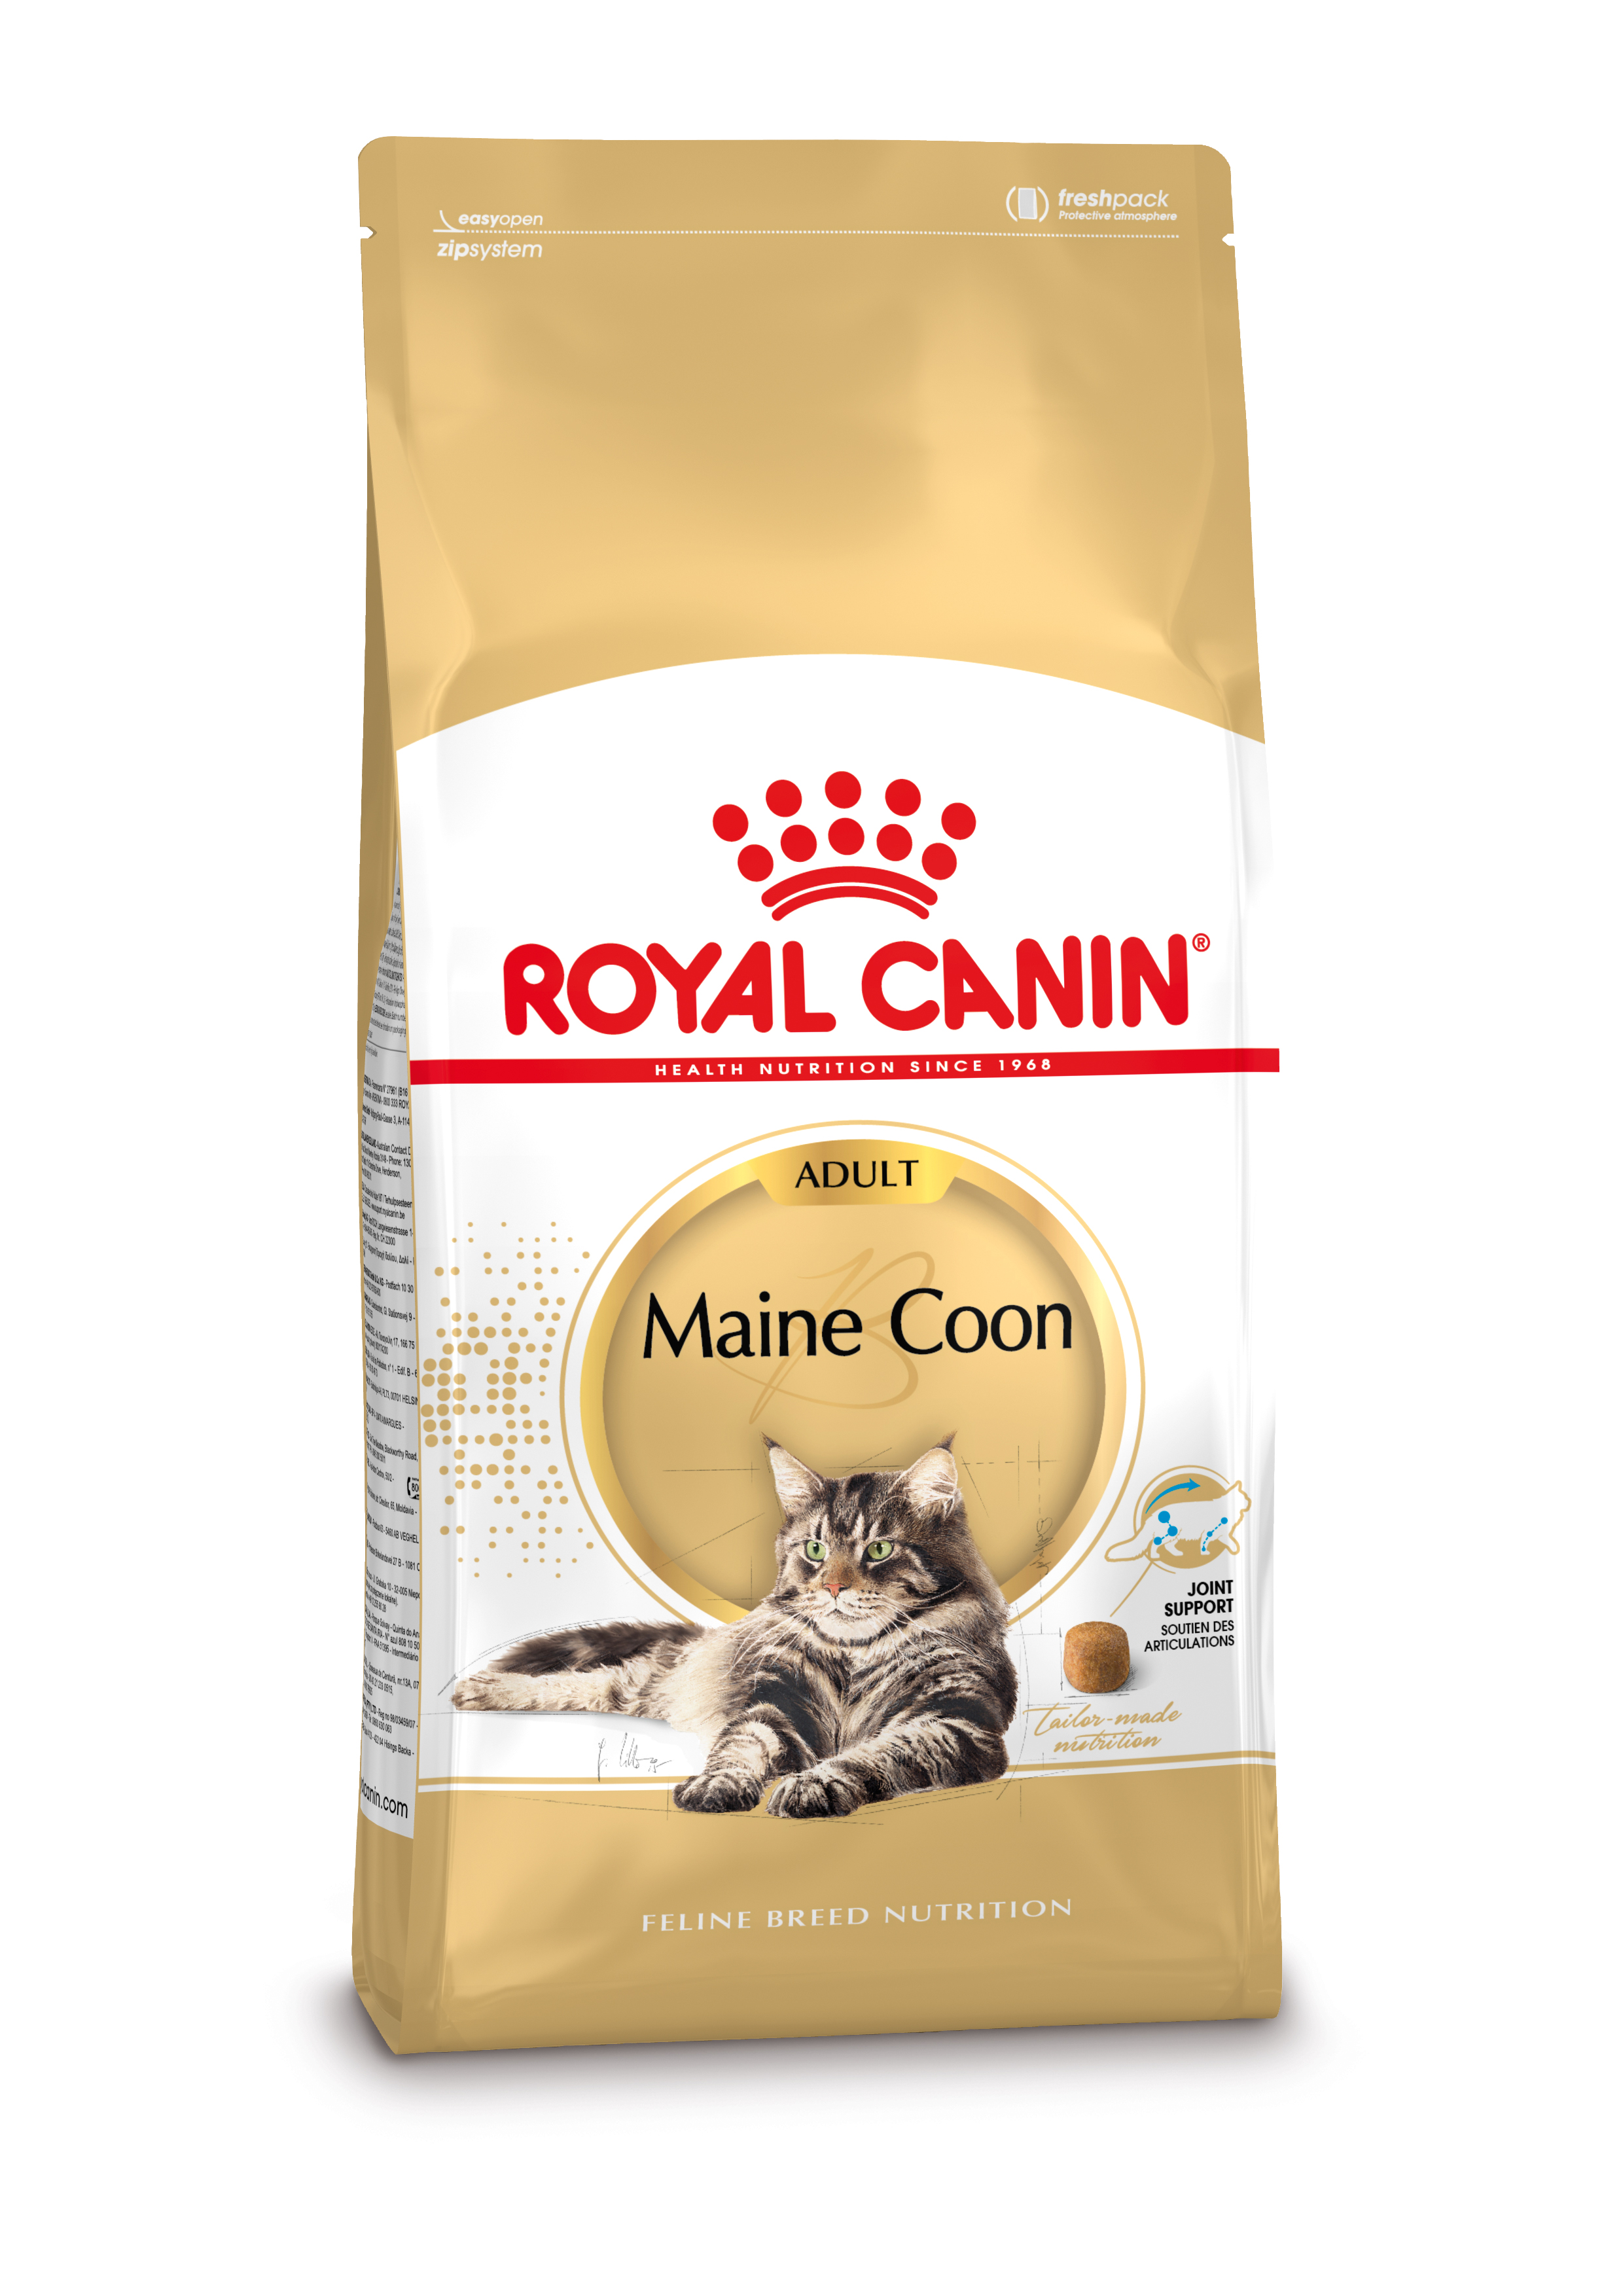 Afbeelding Royal Canin Maine Coon Adult kattenvoer 10 + 2 kg door Brekz.nl